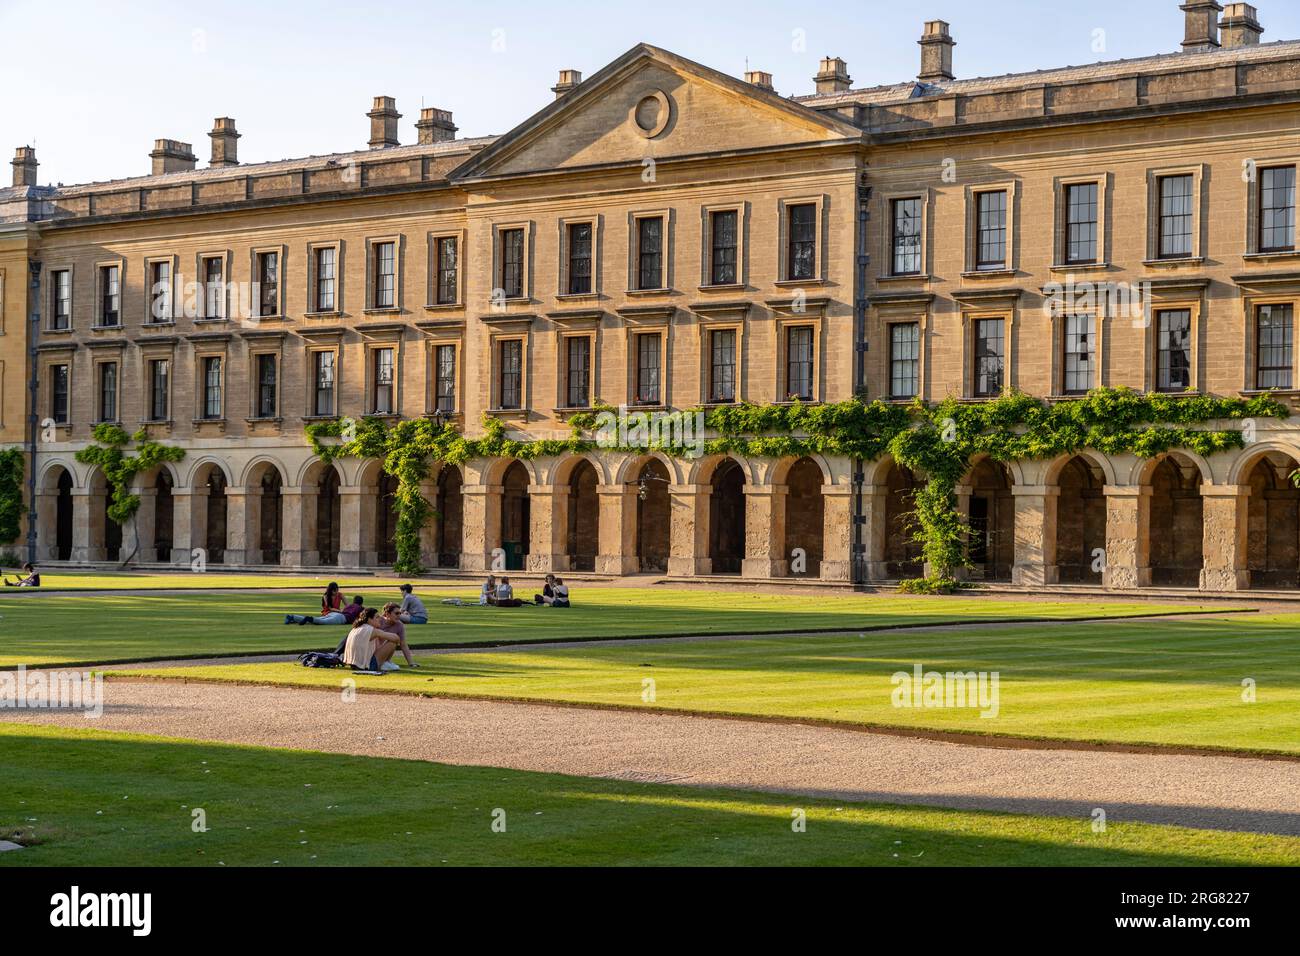 Das Magdalen College in Oxford, Oxfordshire, England, Großbritannien, Europa | Magdalen College in Oxford, Oxfordshire, England, Vereinigtes Königreich Stockfoto